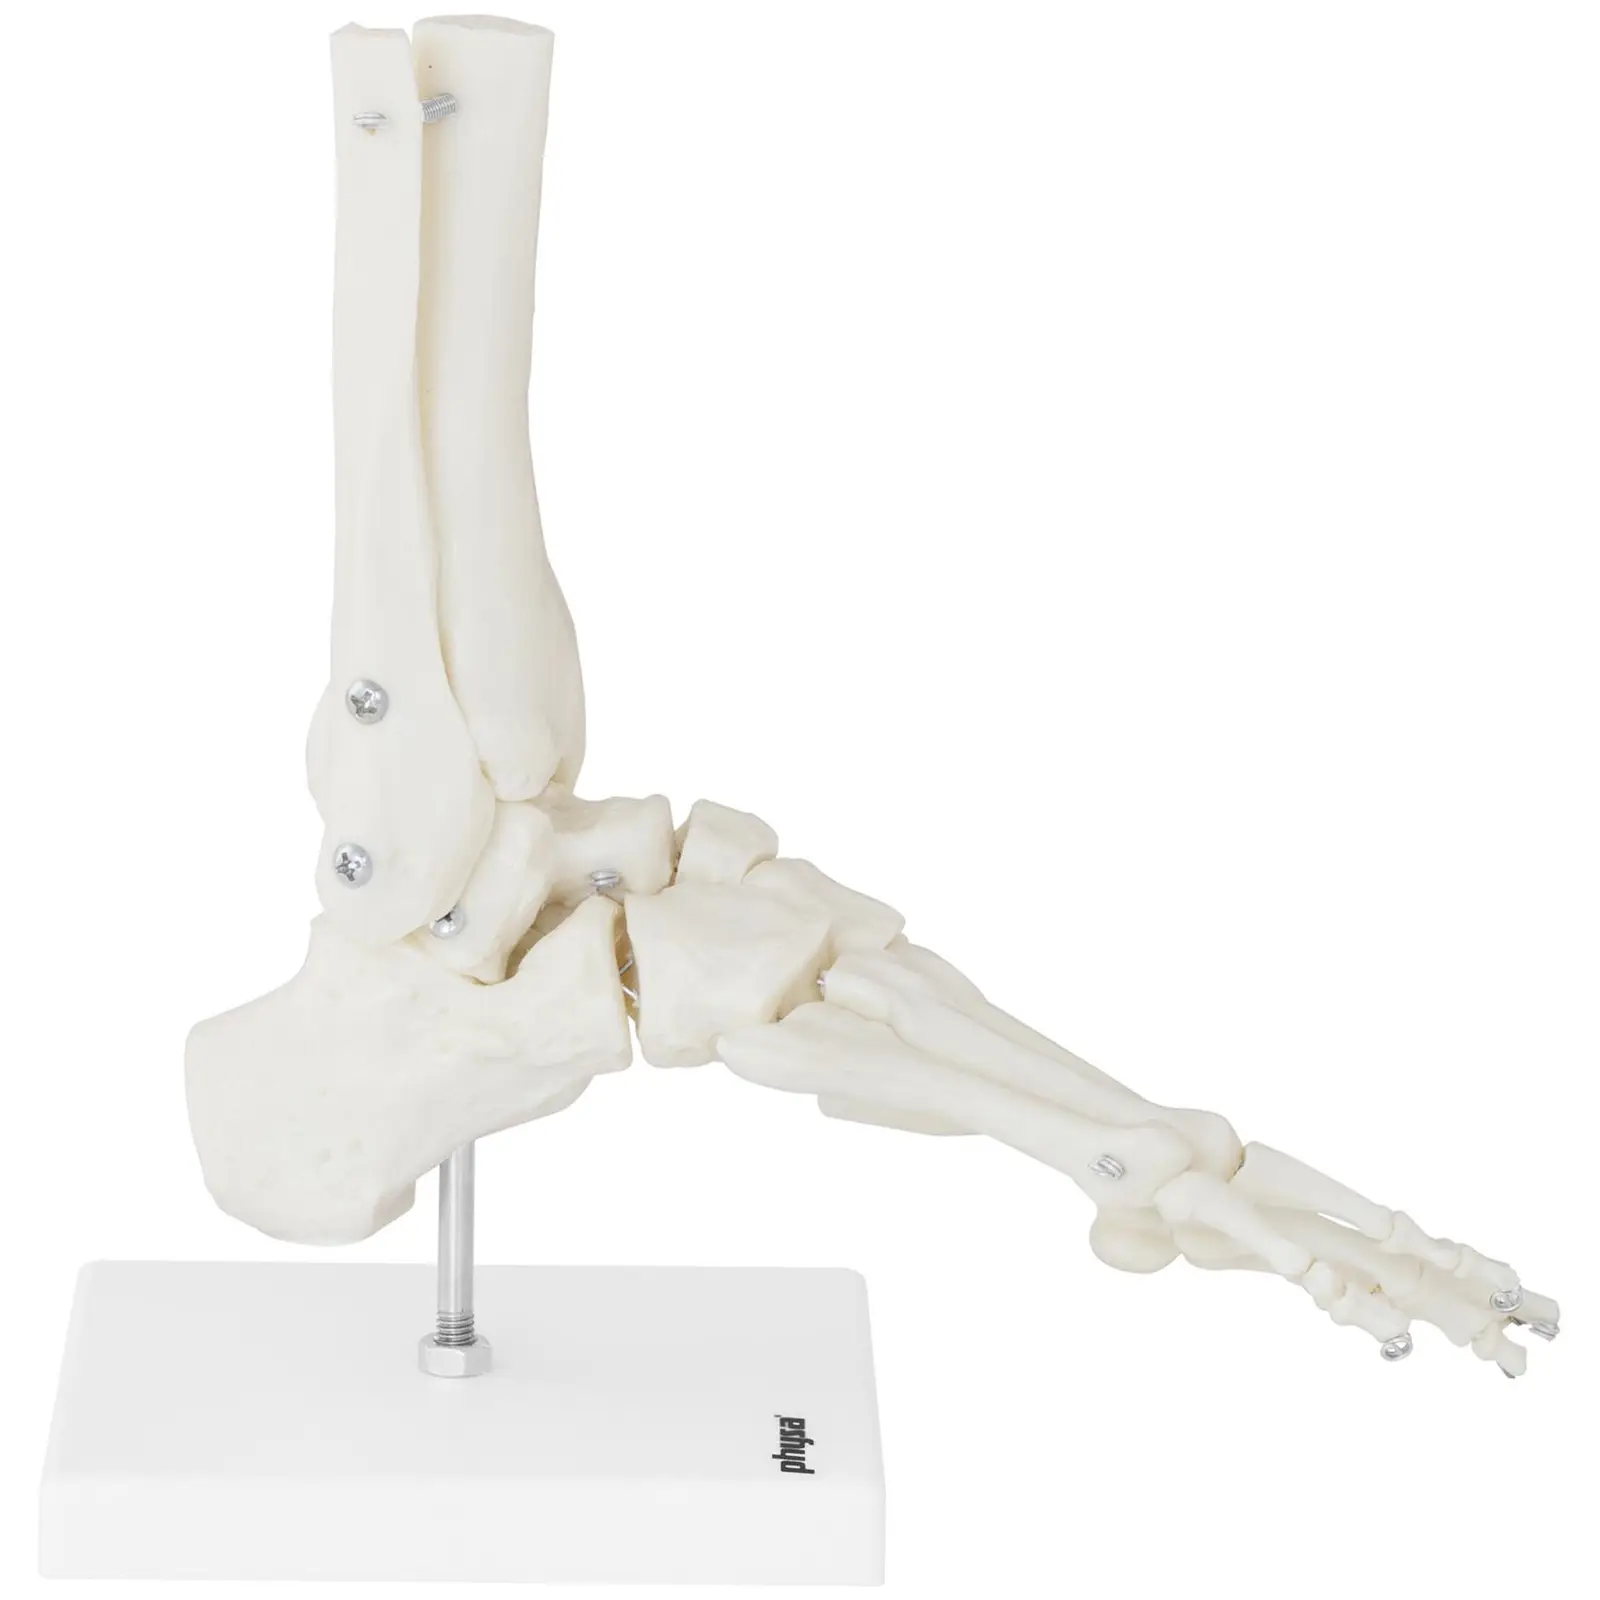 Modello anatomico piede